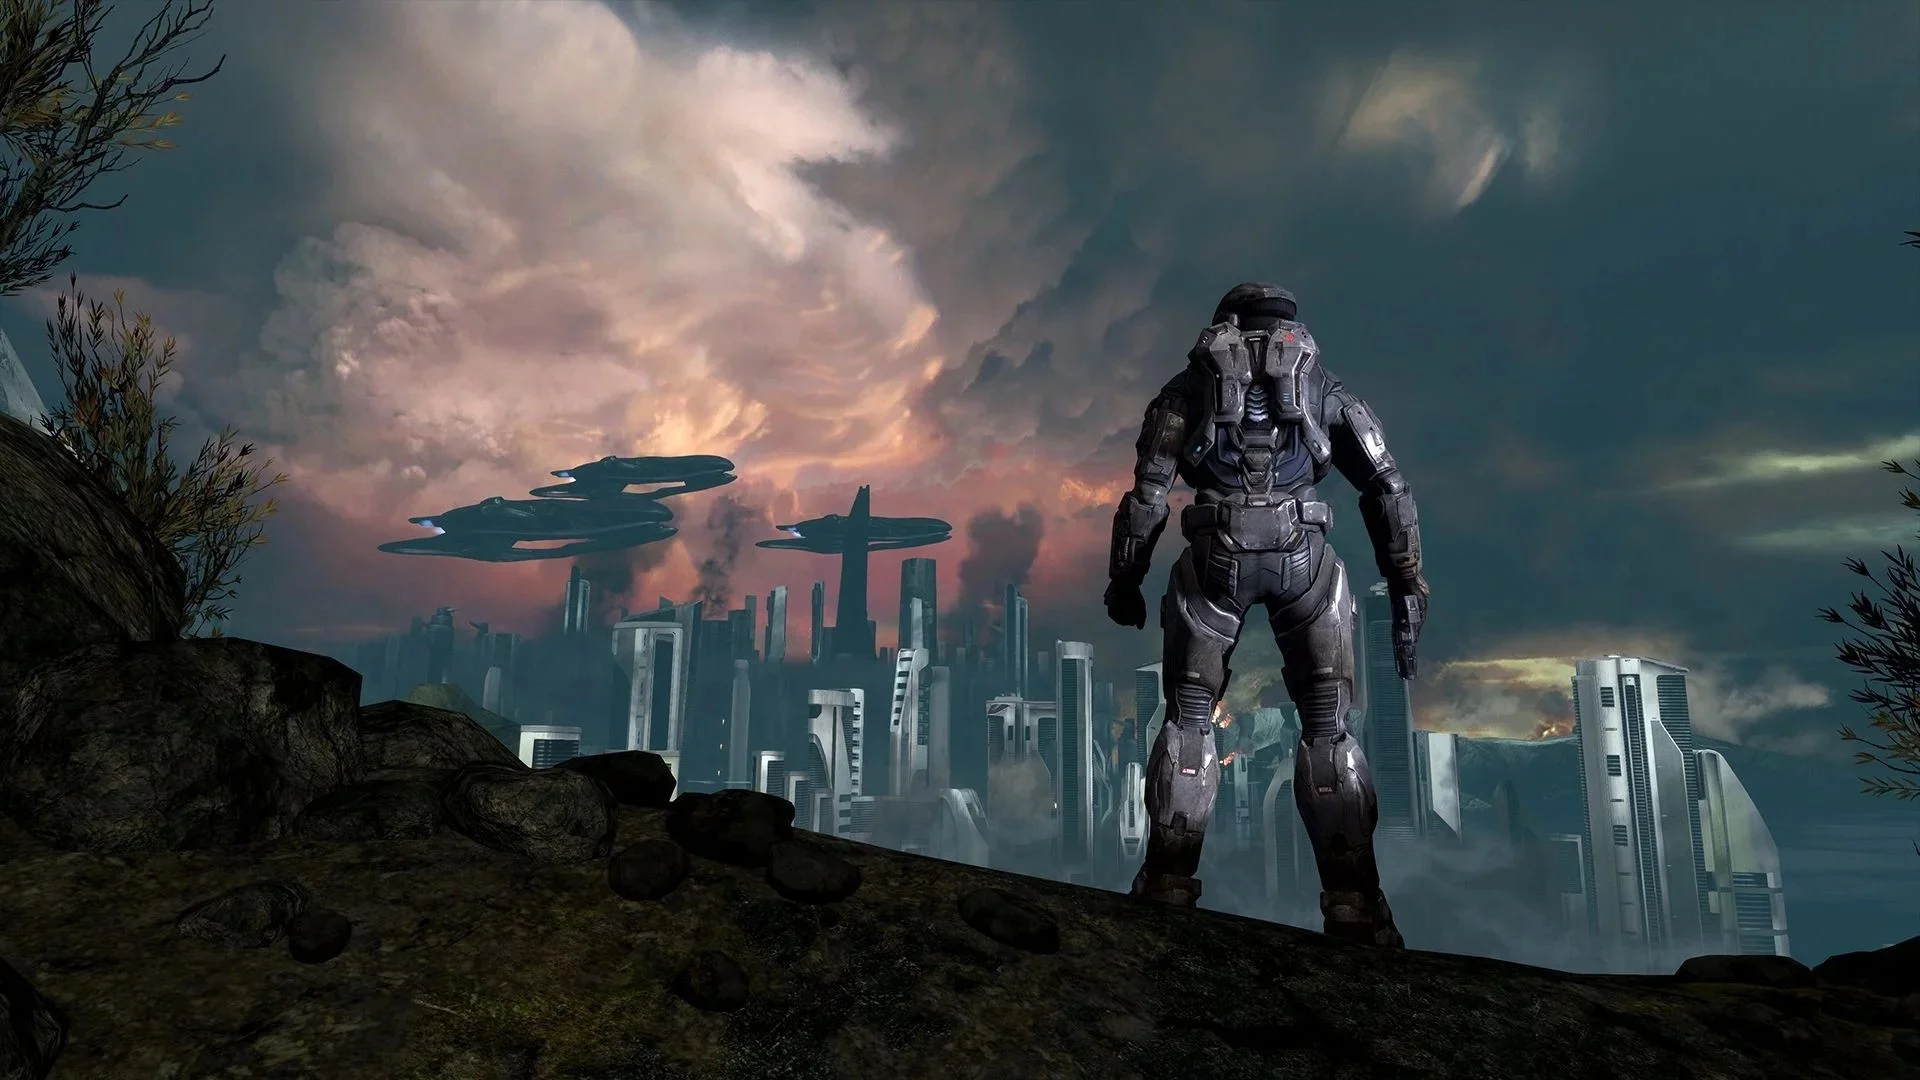 Halo: Reach, лучшая часть серии, вышла на PC. Ответы на главные вопросы - фото 3